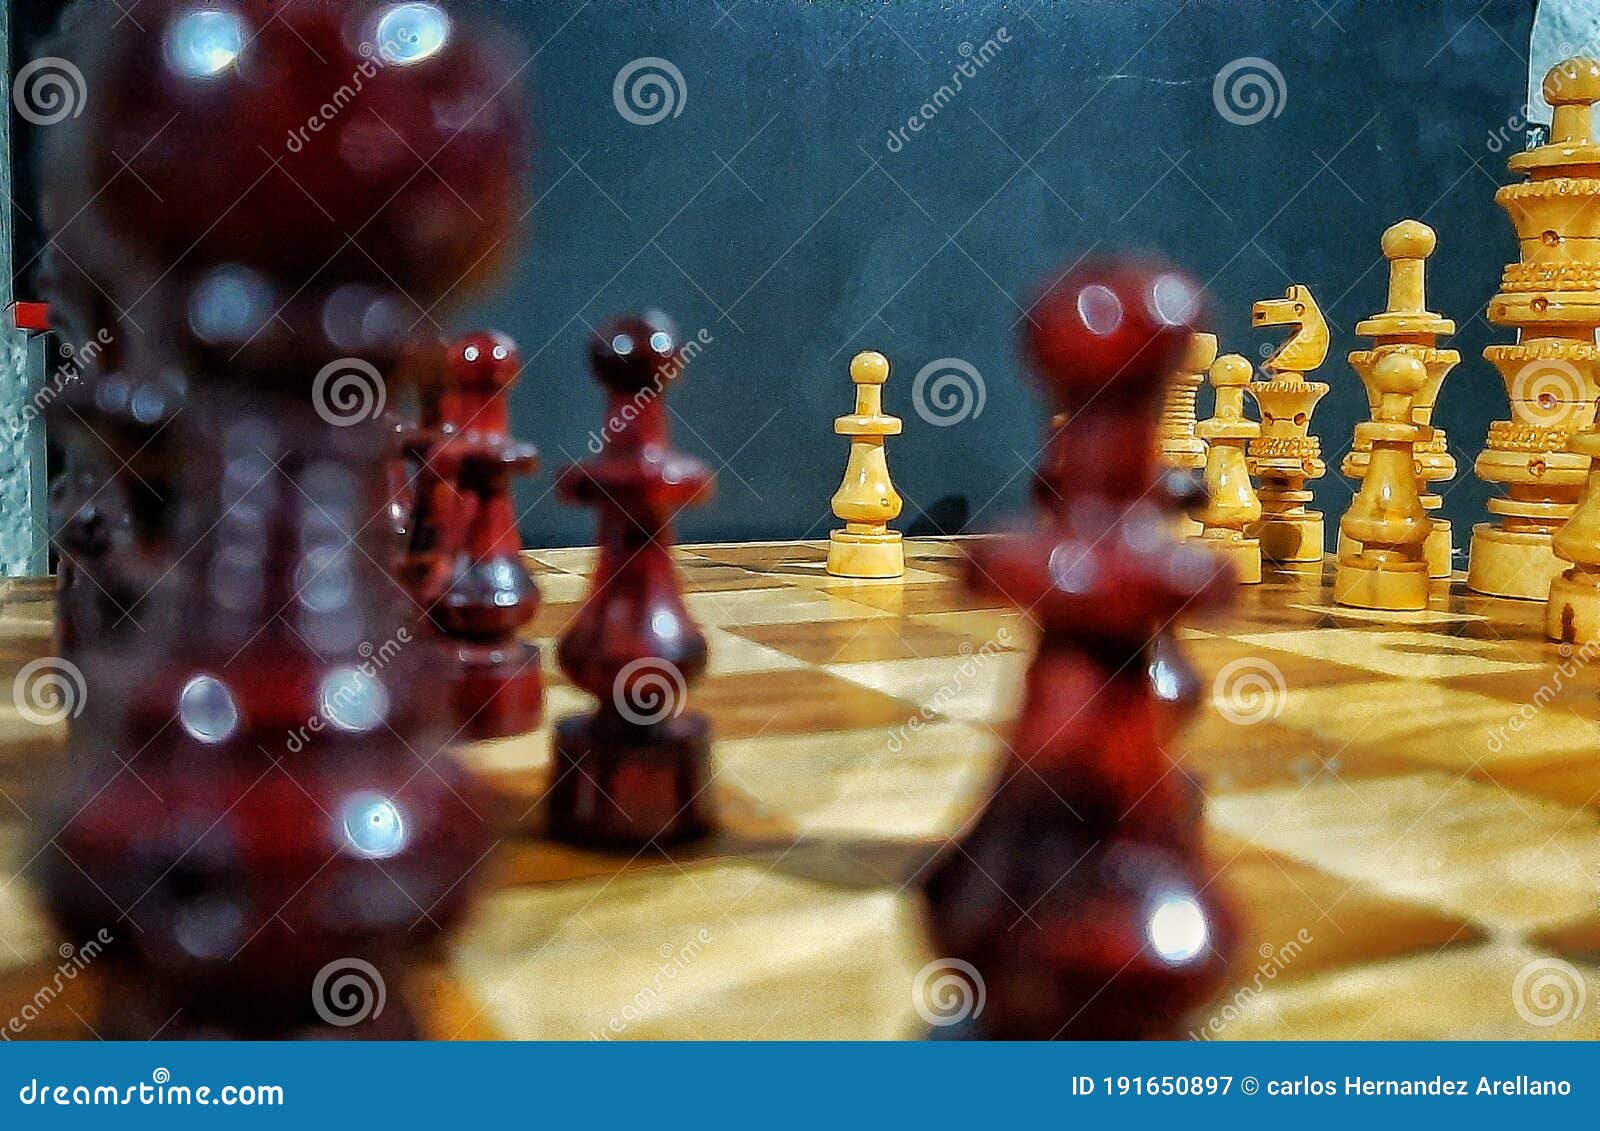 chess woods